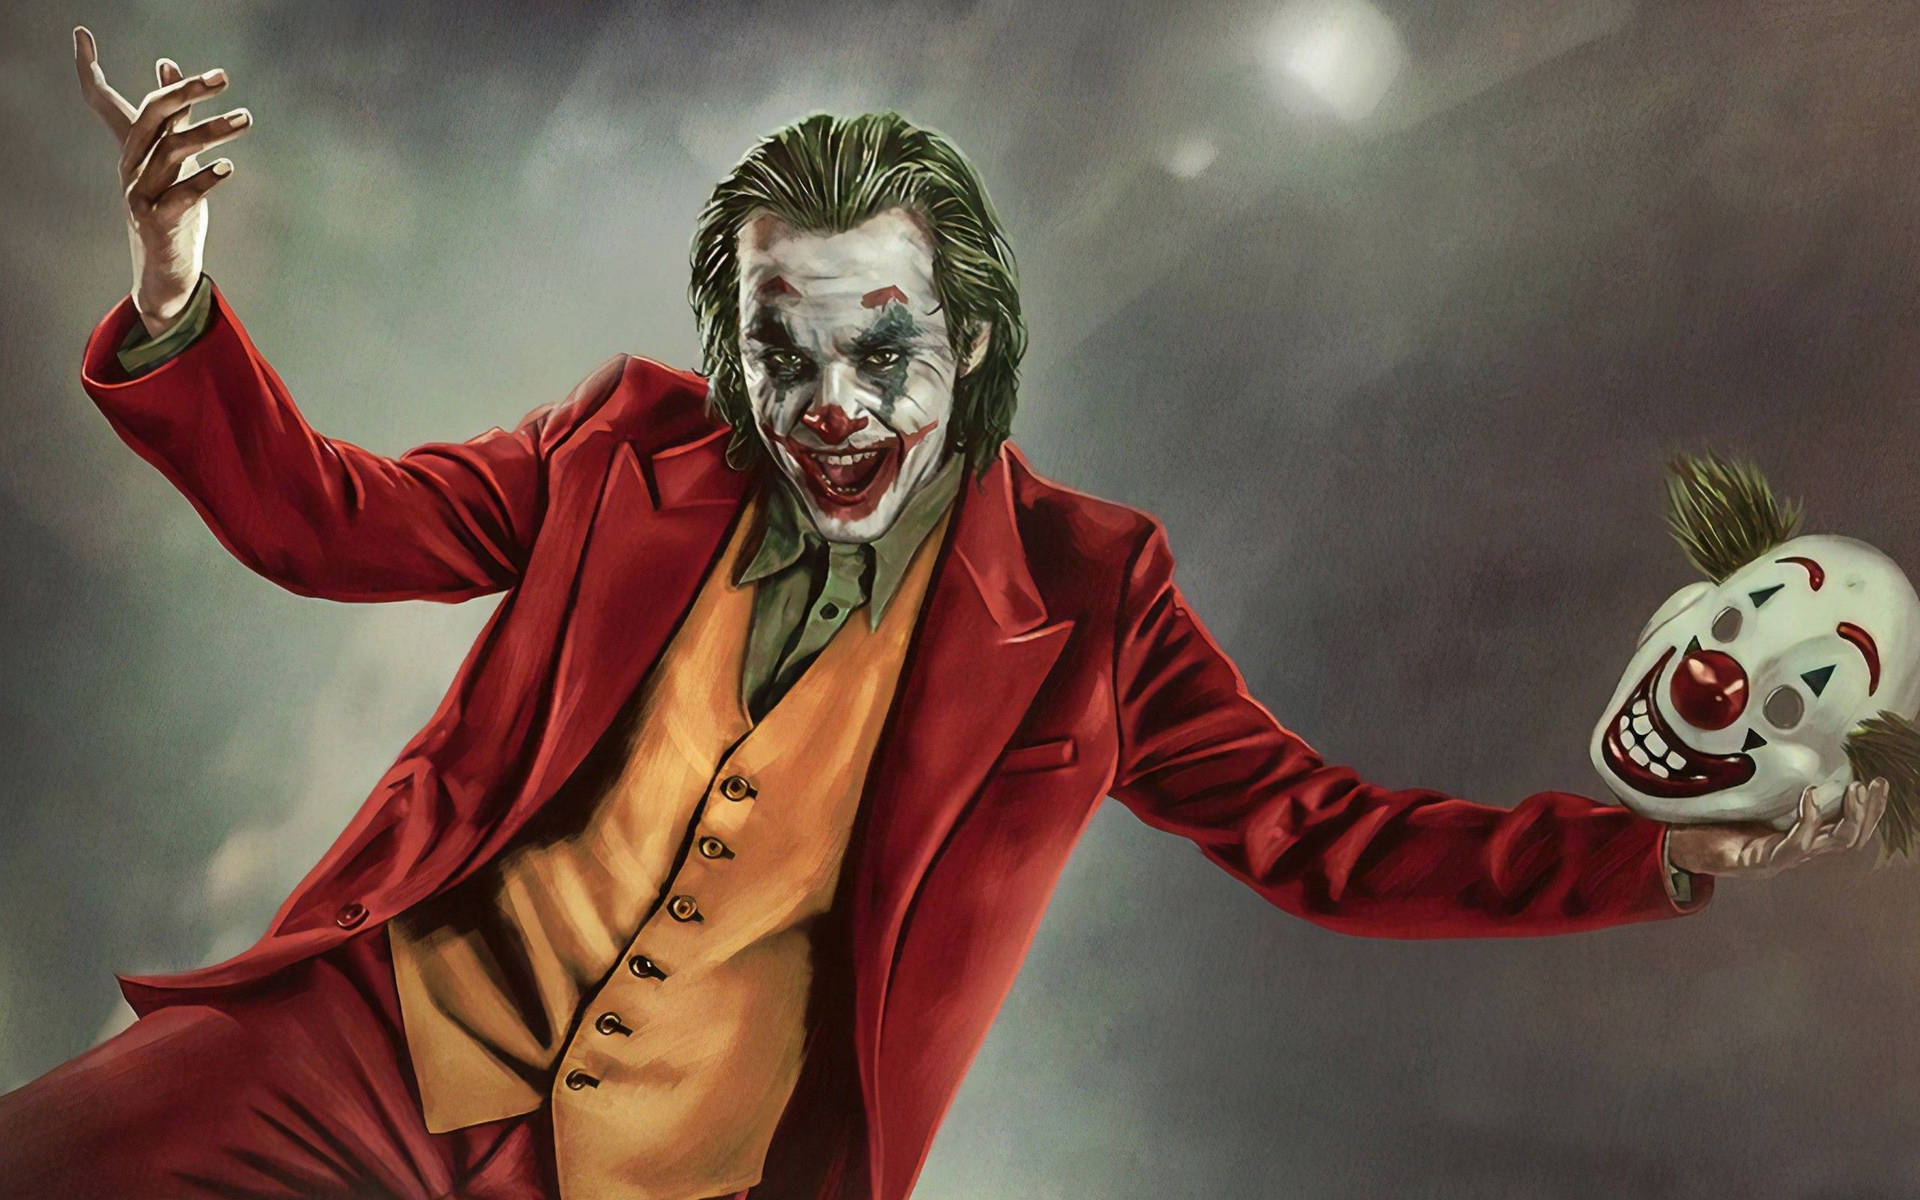 Goofy Poster Of Joker 2019